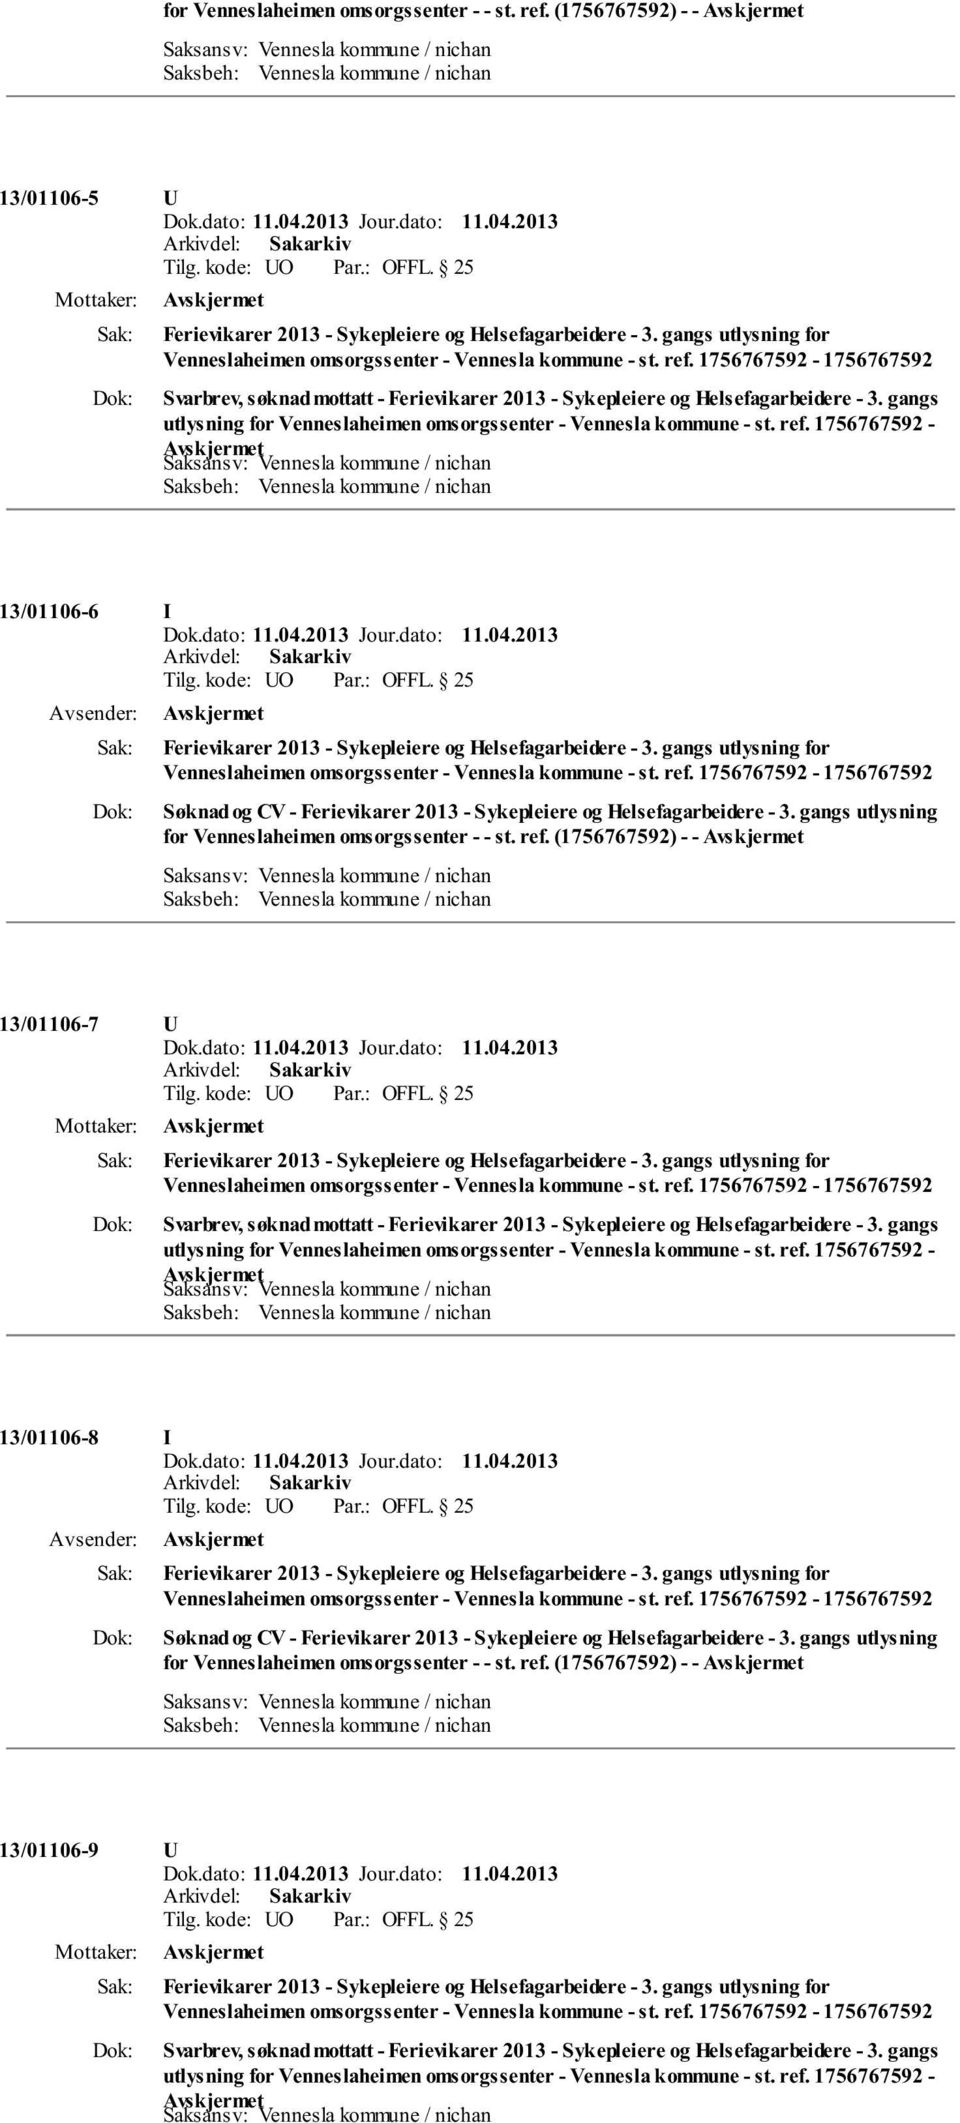 gangs utlysning for Venneslaheimen omsorgssenter - - st. ref. (1756767592) - - 13/01106-7 U Svarbrev, søknad mottatt - Ferievikarer 2013 - Sykepleiere og Helsefagarbeidere - 3.